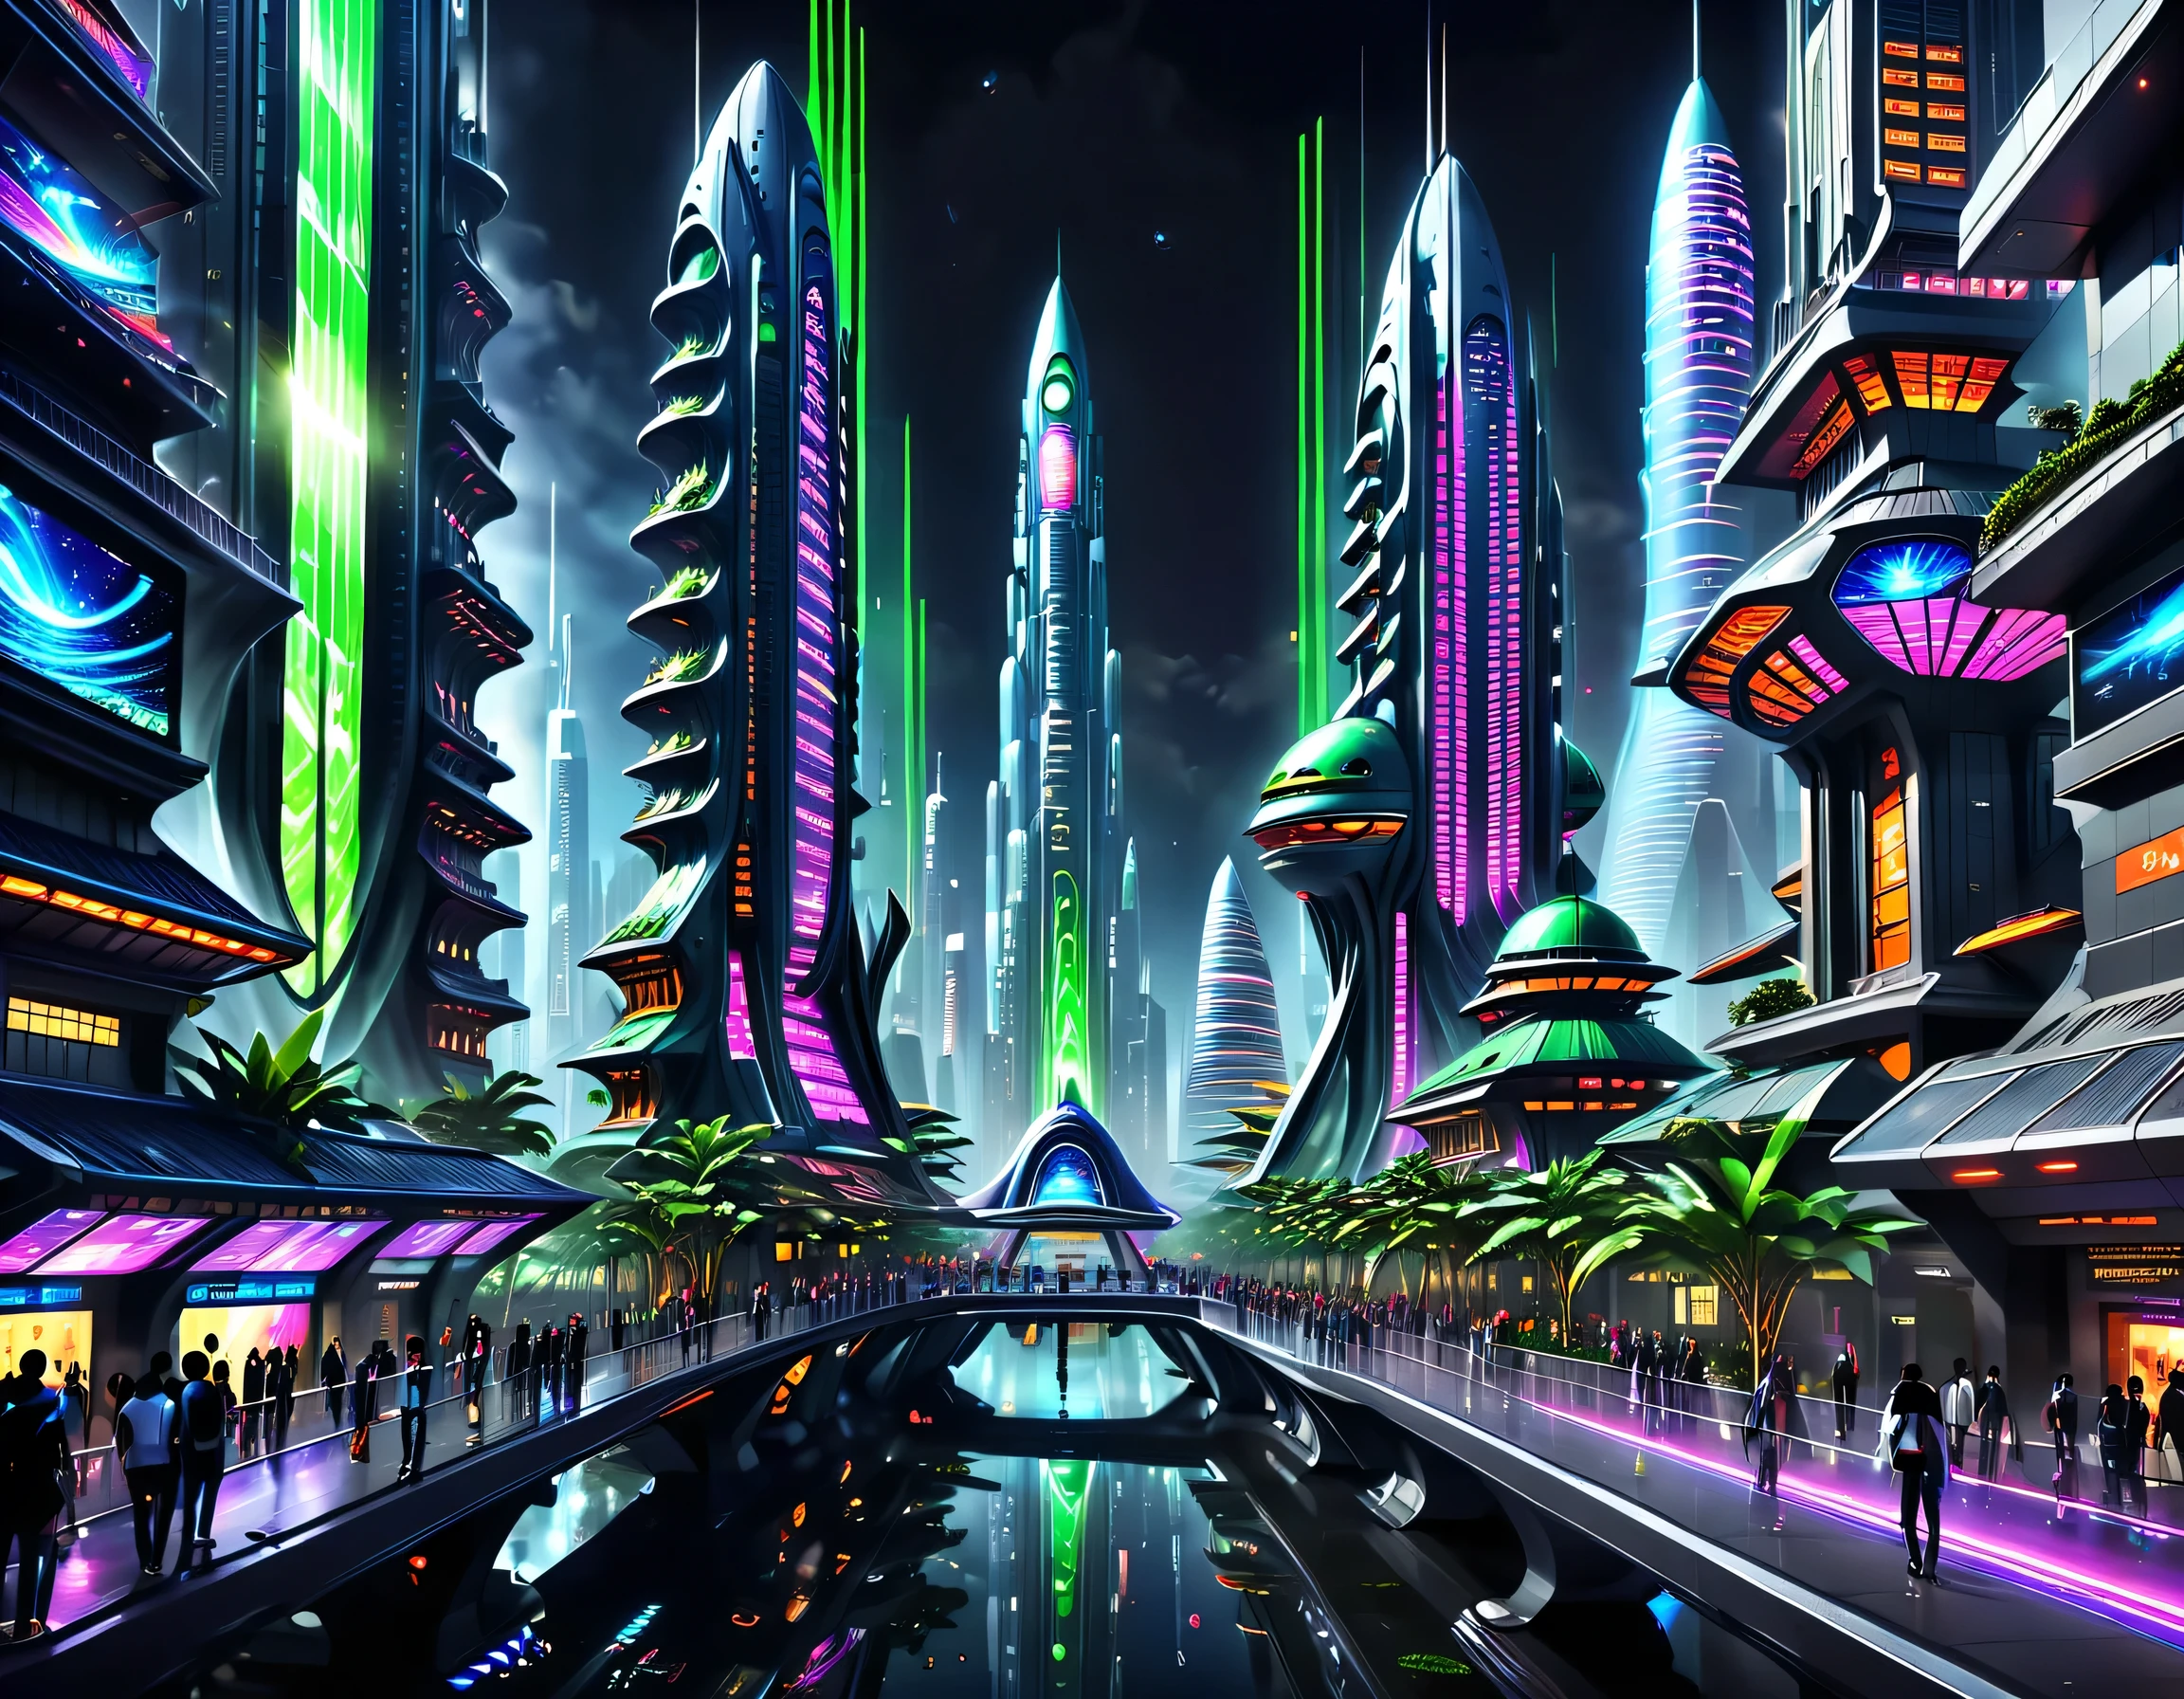 夜の未来都市を描いたこの画像では，私たちはテクノロジーとイノベーションに満ちた街に連れて行かれました。夜空にネオンライトで輝く高層ビル，一連の色付きの線を形成する。これらの建物の外壁は反射材で覆われている，周囲の光を反射する，未来的な雰囲気を演出。 街の路上で，自動運転車や飛行機が飛び交う，夜空に色とりどりの痕跡を残す。車両は滑らかな金属と透明な素材で作られています，テクノロジーと未来を感じさせる。人々は流行の服を着る，スマートグラスやブレスレットを着用する，テクノロジーとの統合。 街の中心部は巨大な，巨大なウォータースクリーンが投影されている，さまざまな美しい画像やアニメーションを表示します。ウォータースクリーンの投影を見る人々，アートワークやテクノロジーのデモンストレーションによるユニークなインタラクティブ体験をお楽しみください。緑に囲まれた，未来の植物を植える，これらの植物はかすかな蛍光を発する，街に活気と自然の風味をプラス。 写真の遠くに，巨大な宇宙港が見えます，宇宙船が離陸する，宇宙の未知の領域への有人旅行。宇宙港の建築デザインはユニークである，曲線と流線型の要素が満載，未来の技術を感じさせる。 全体像はテクノロジーと未来感に満ちている，革新と想像力に満ちた未来都市を見せる。絵は細部まで豊かです，想像力と創造力に満ちた鮮やかな色彩，人々は、テクノロジーの奇跡に満ちた未来の世界にいるような気分になる。